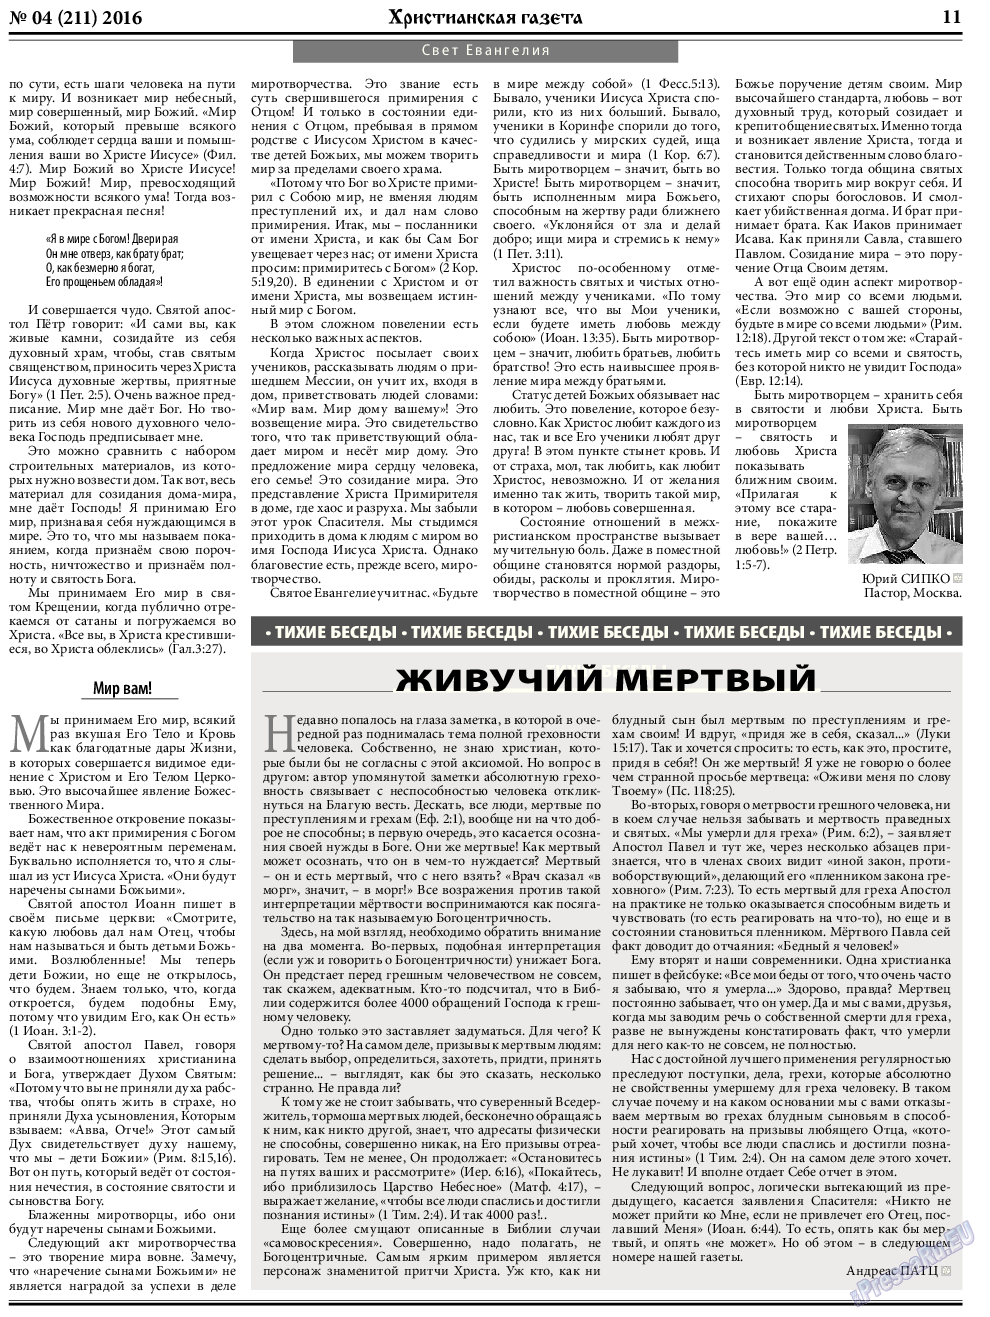 Христианская газета, газета. 2016 №4 стр.11